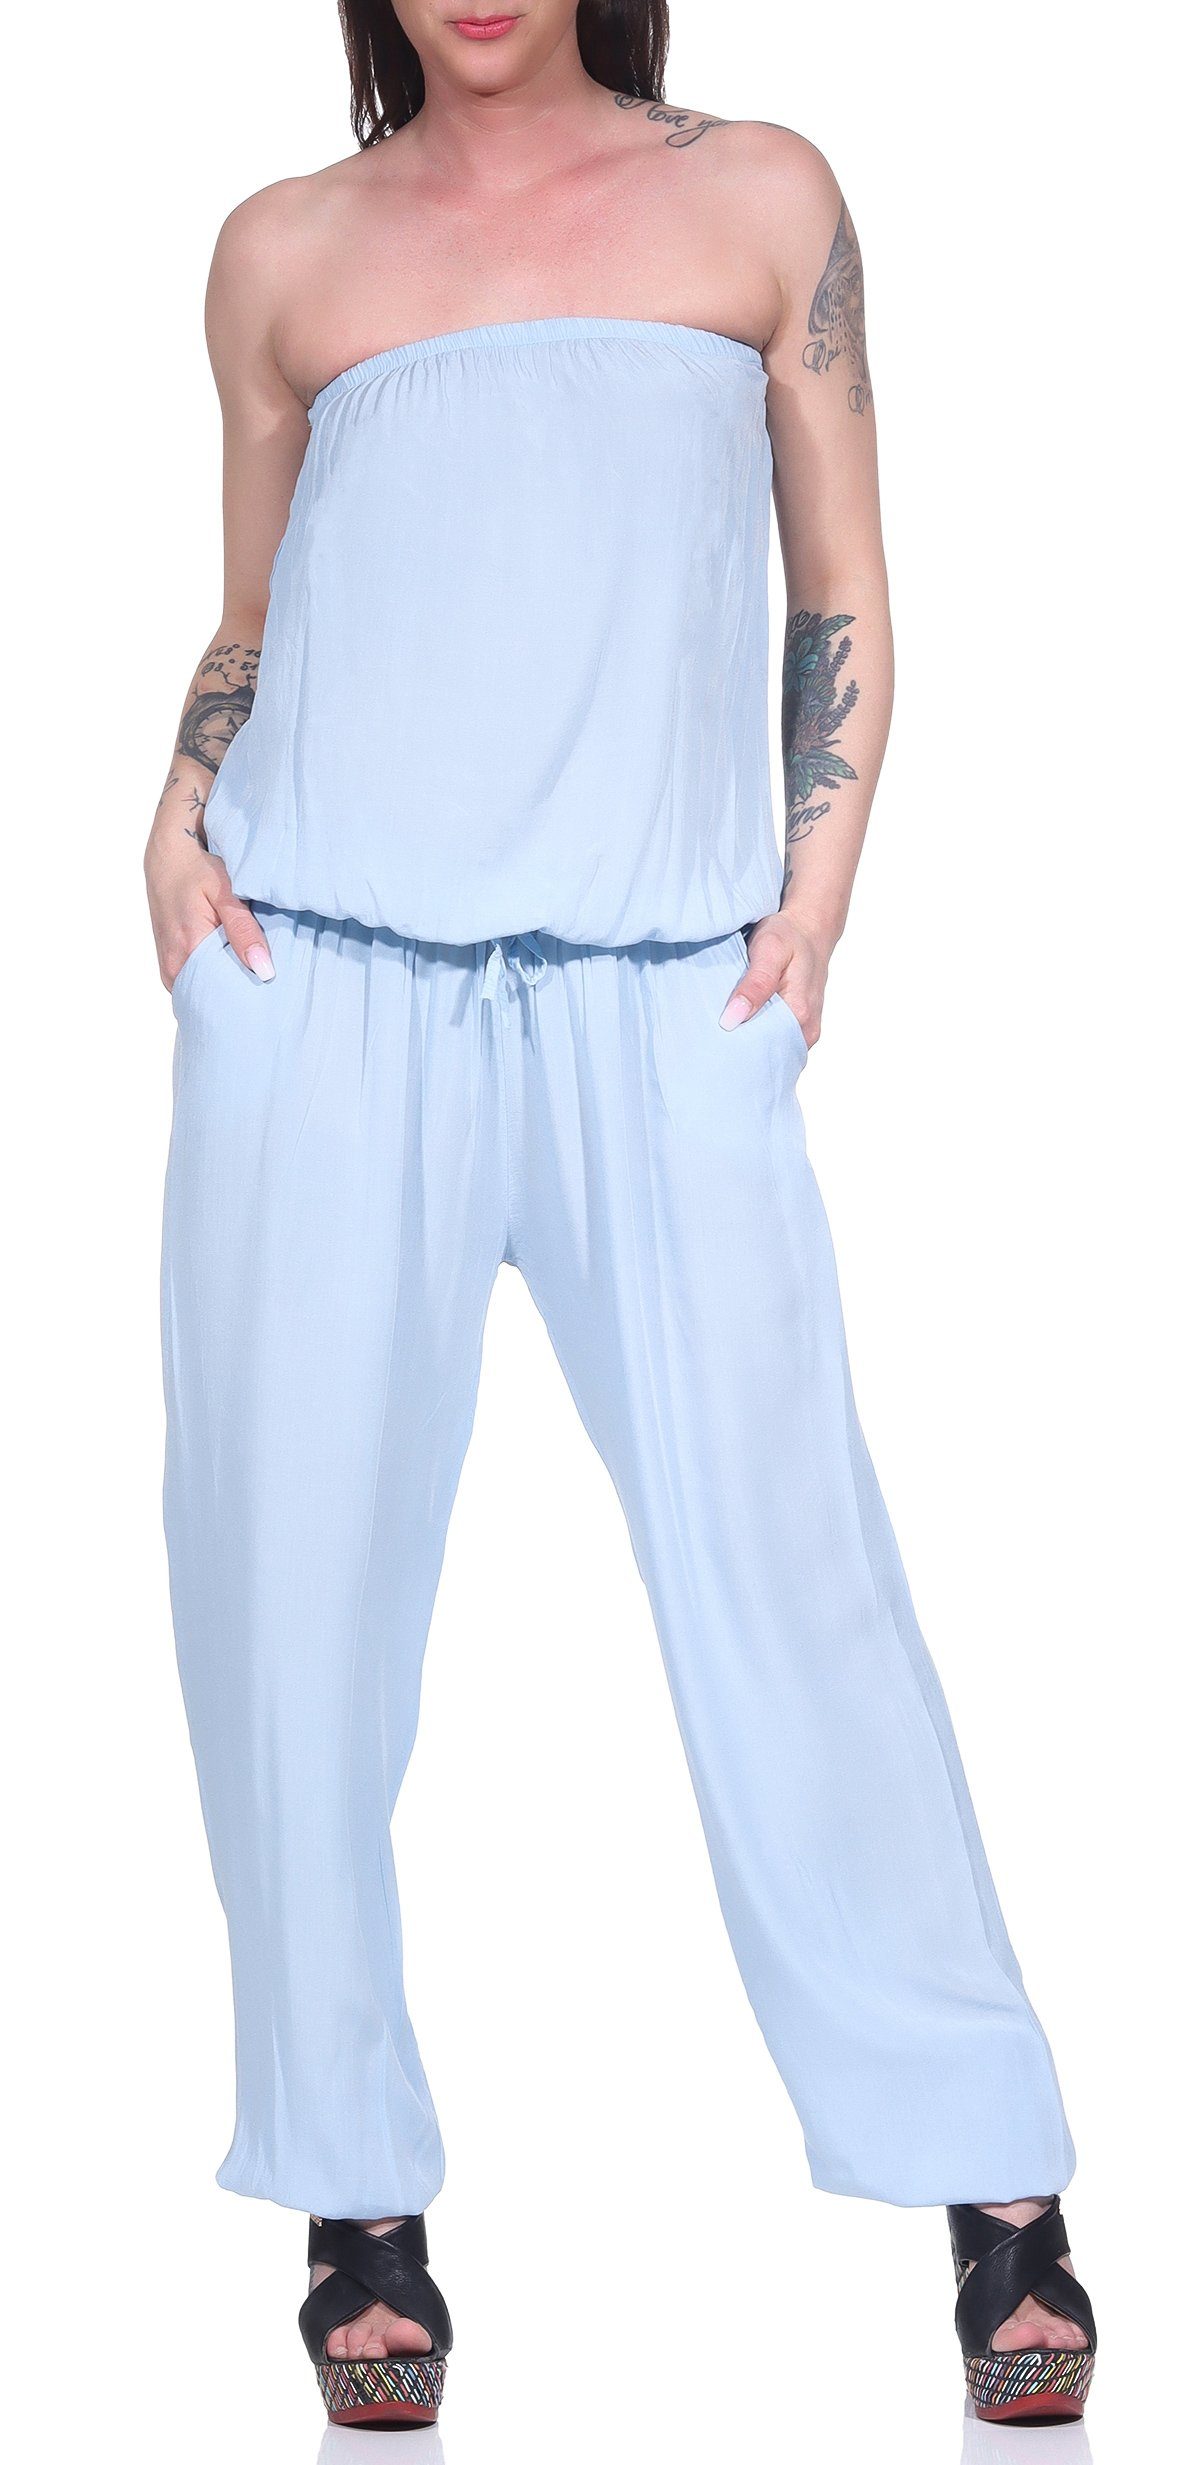 malito more than fashion Jumpsuit 4538 mit Bindeband Einheitsgröße blau